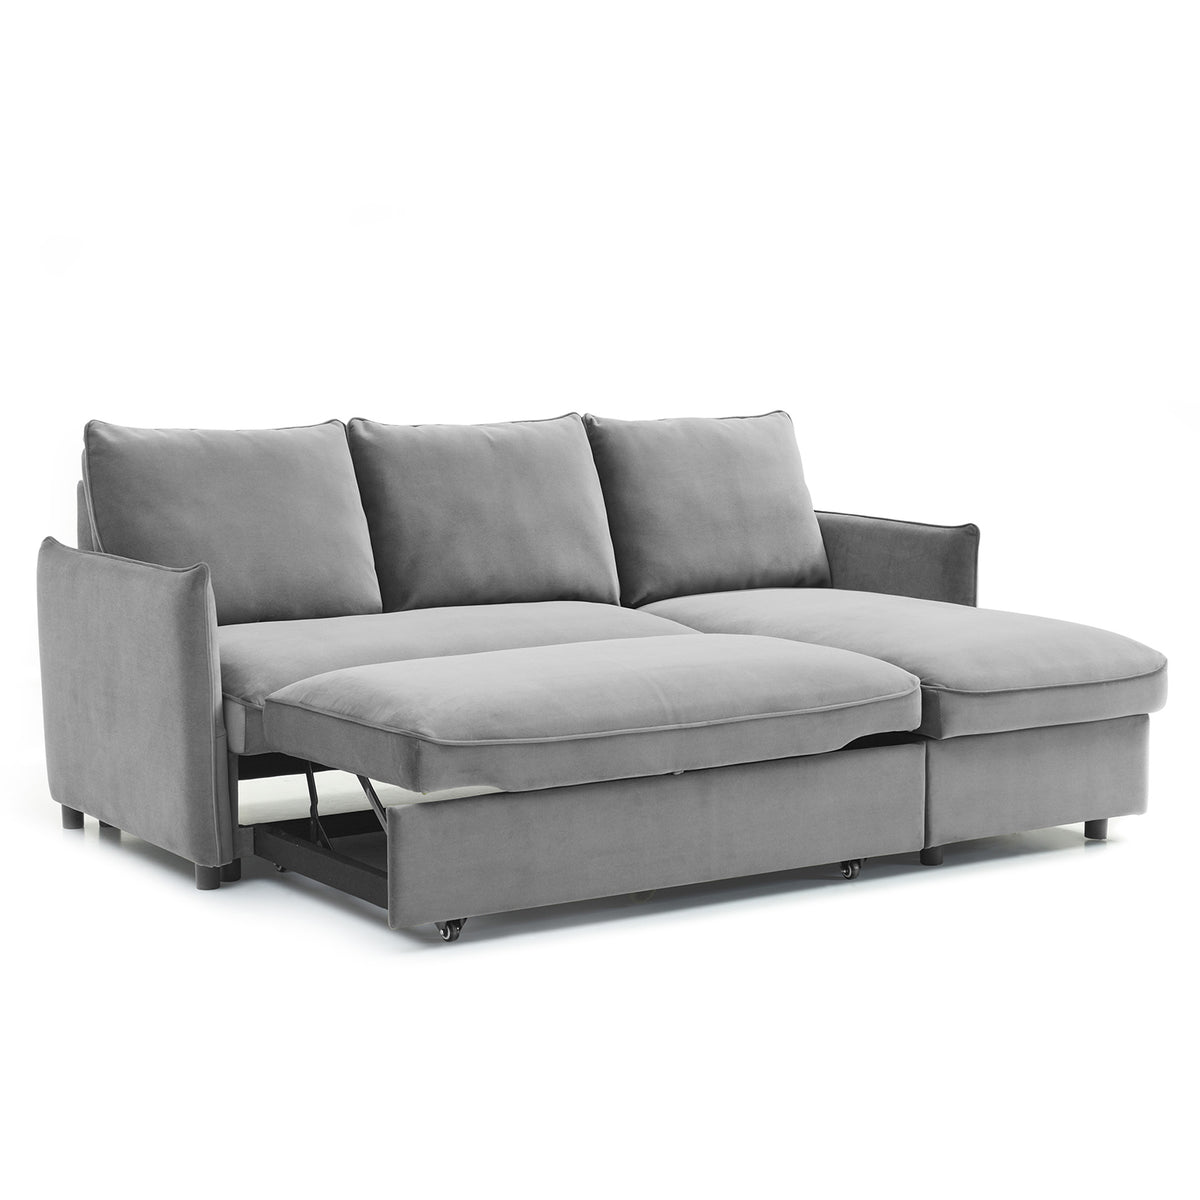 Thalia Grey Velvet 3 Seater Corner Chaise Sofa Bed from Roseland Furniture